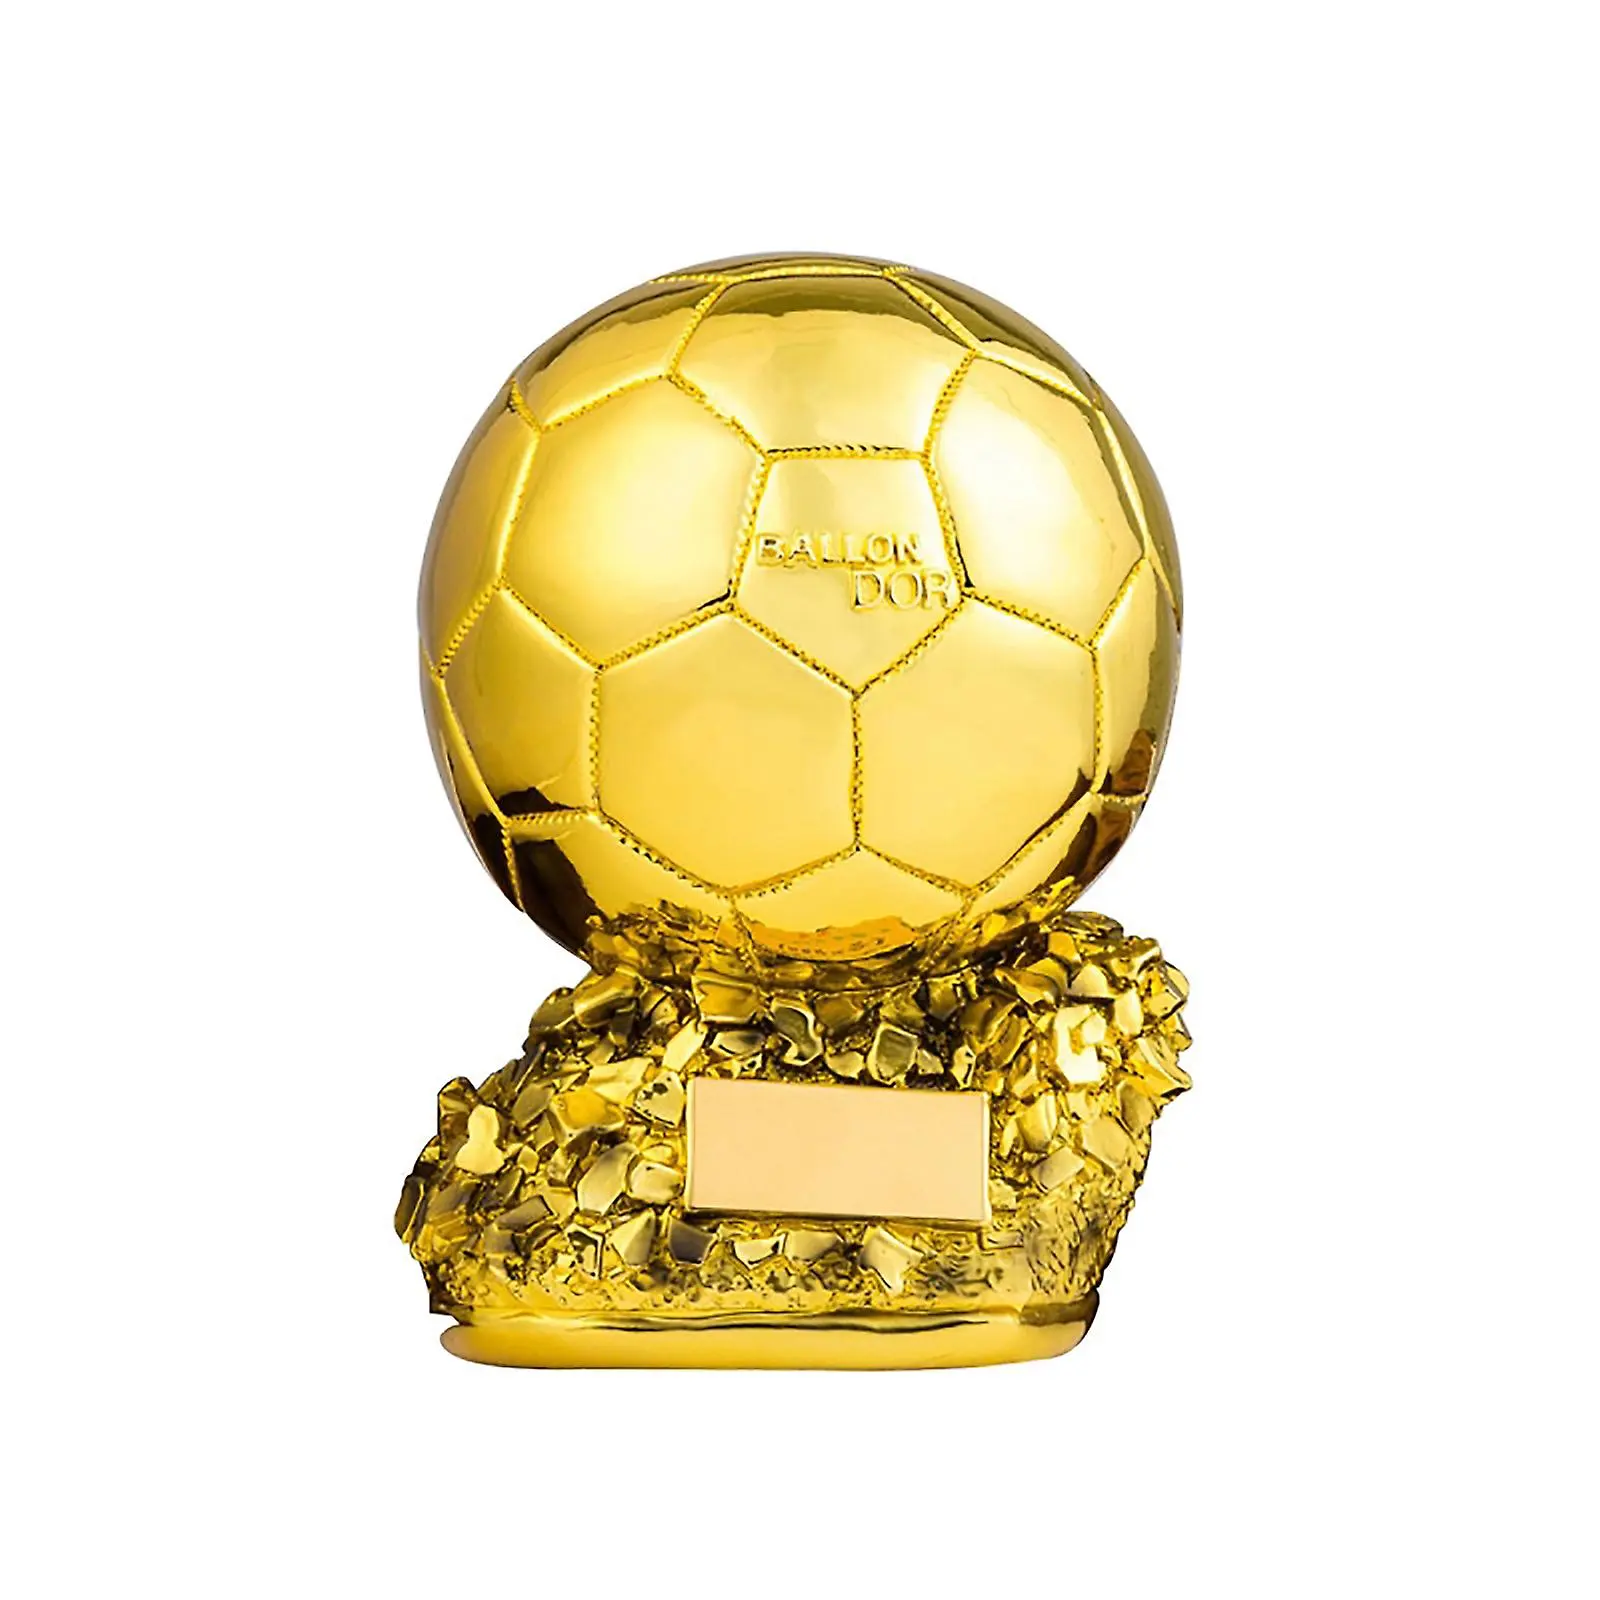 Trofeo fabrica trofeo de pelota de oro de fútbol dorado moderno